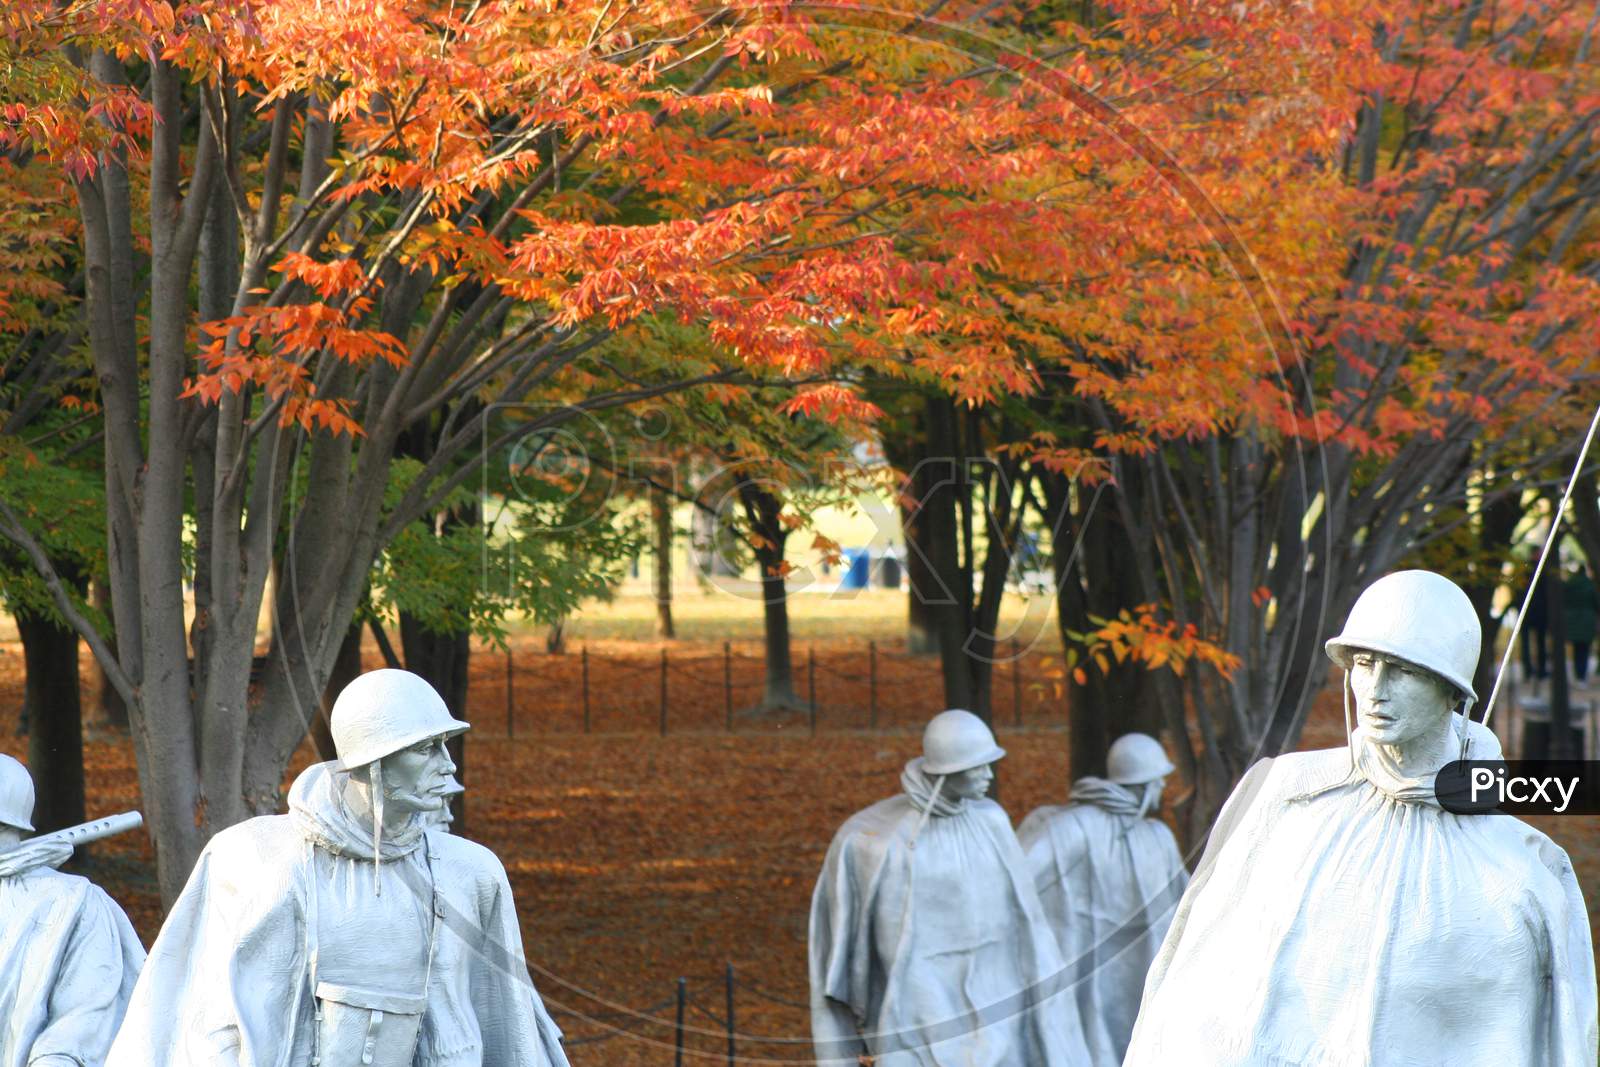 Korean War Memorial (Dc 0162)